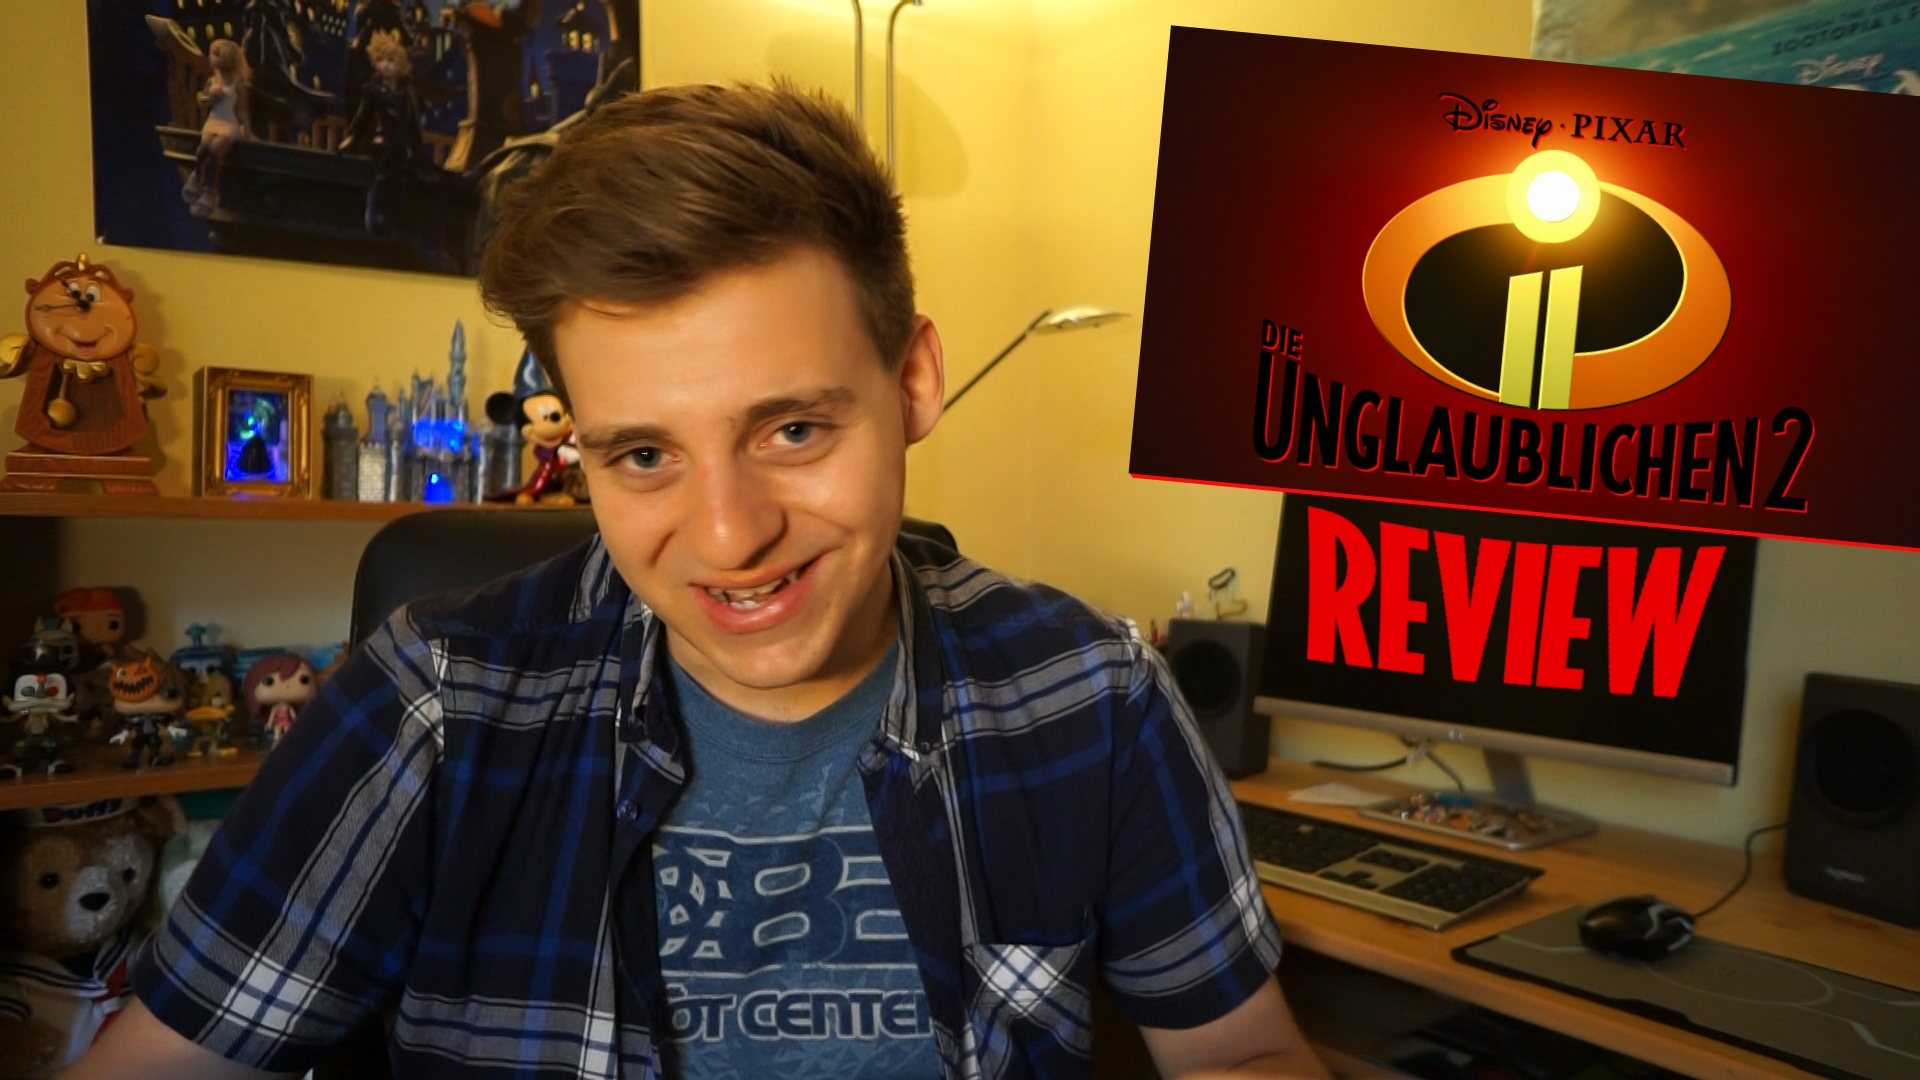 Die Unglaublichen 2 Review